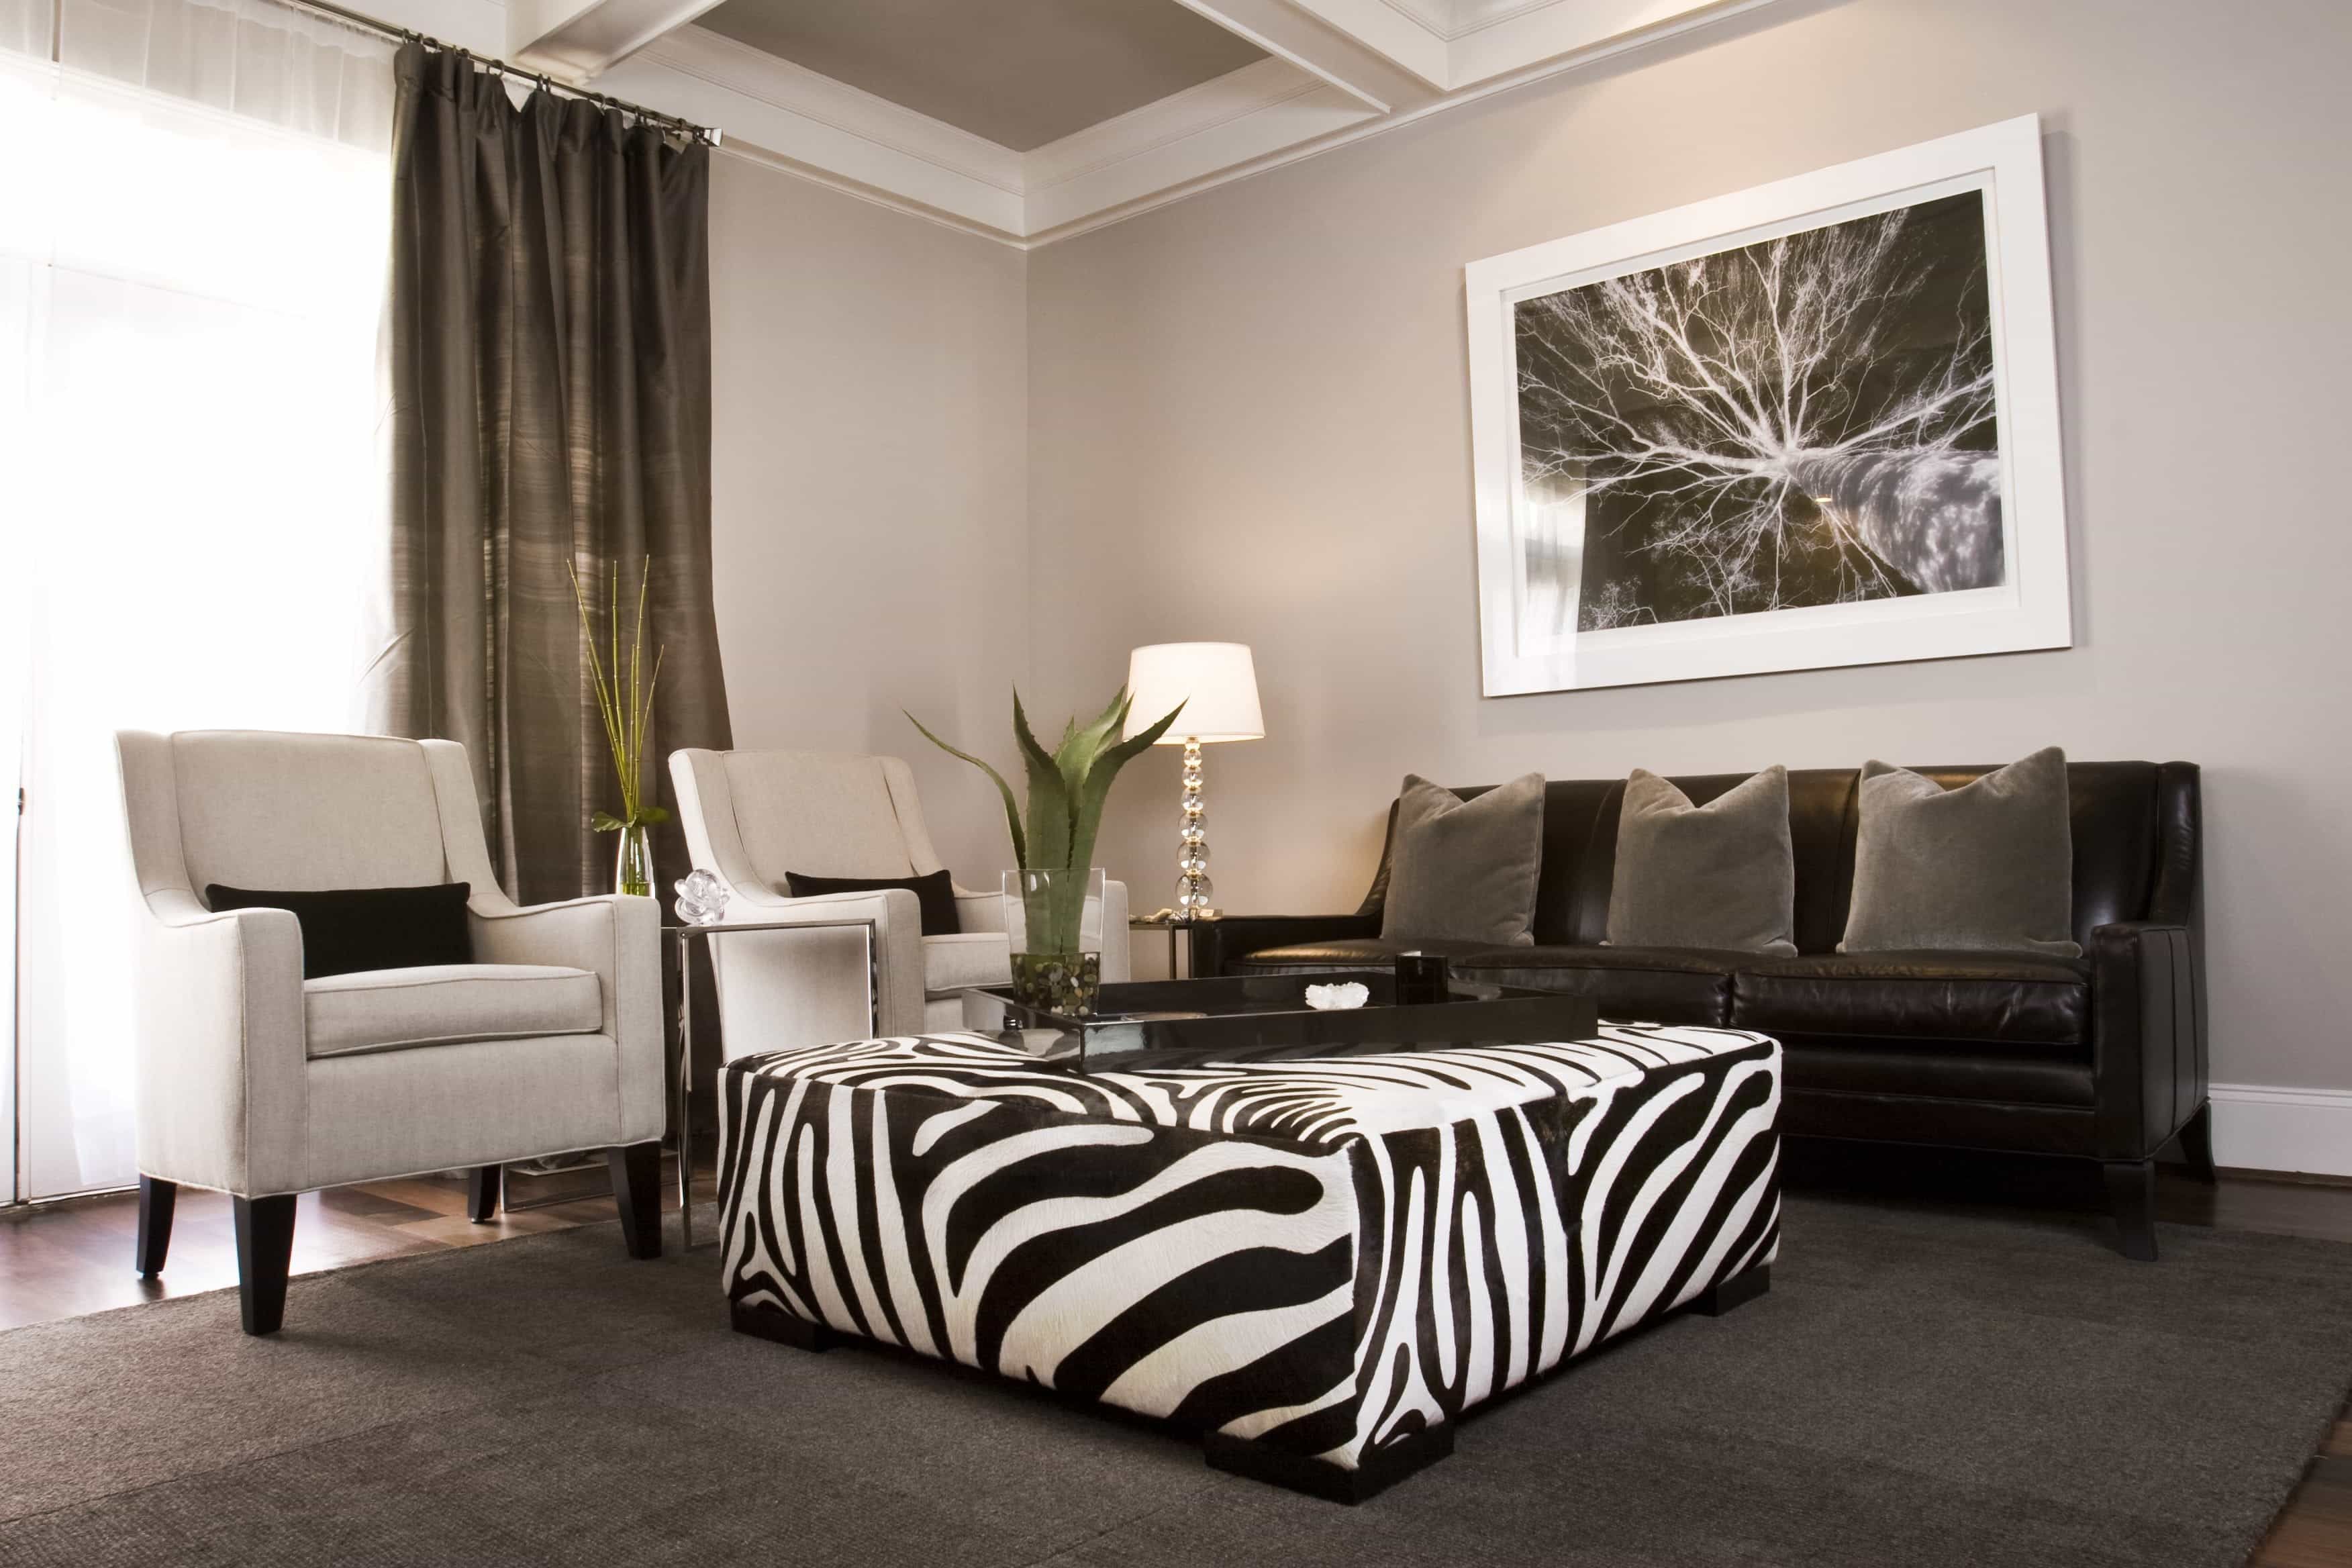 Royal Sofa Furniture For Elegant Living Room Design #23730 ...